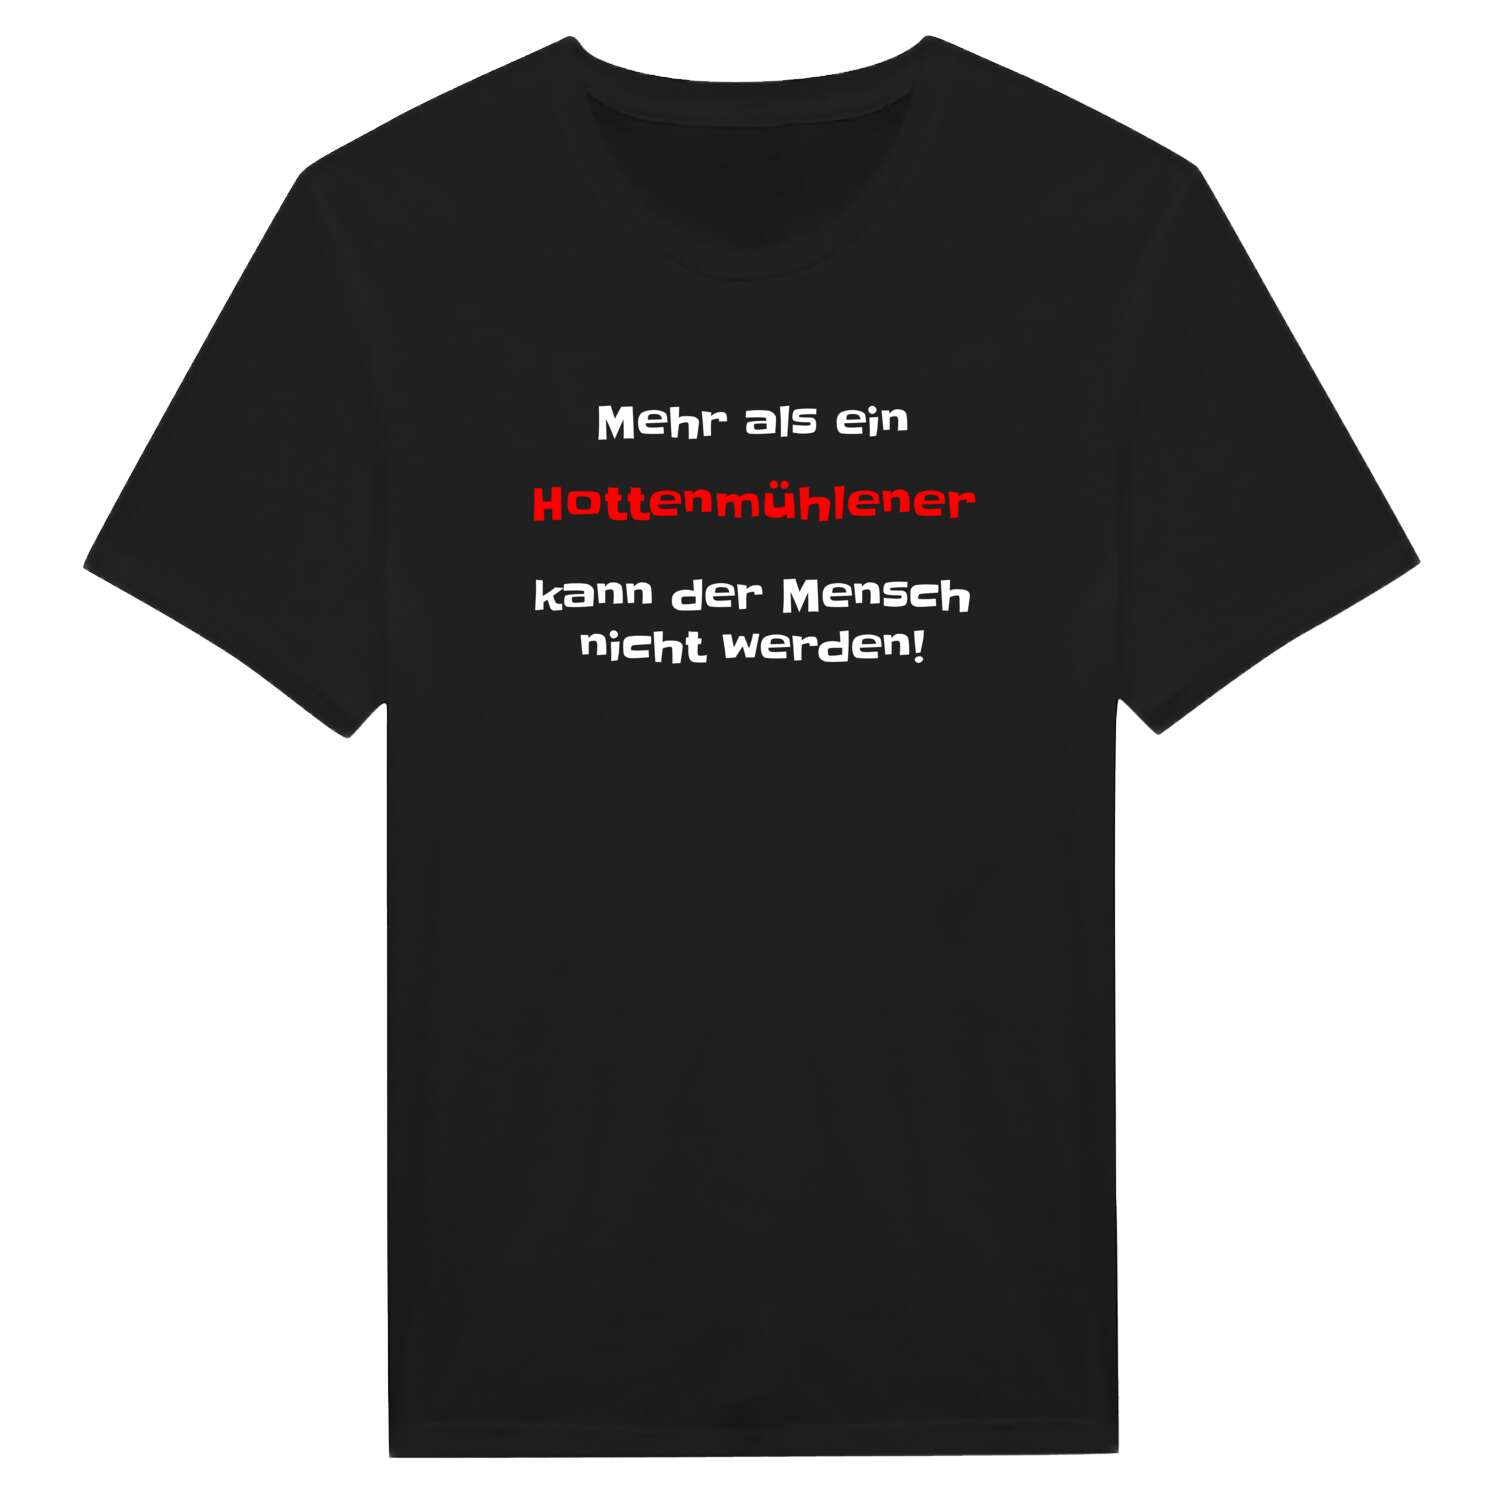 Hottenmühle T-Shirt »Mehr als ein«